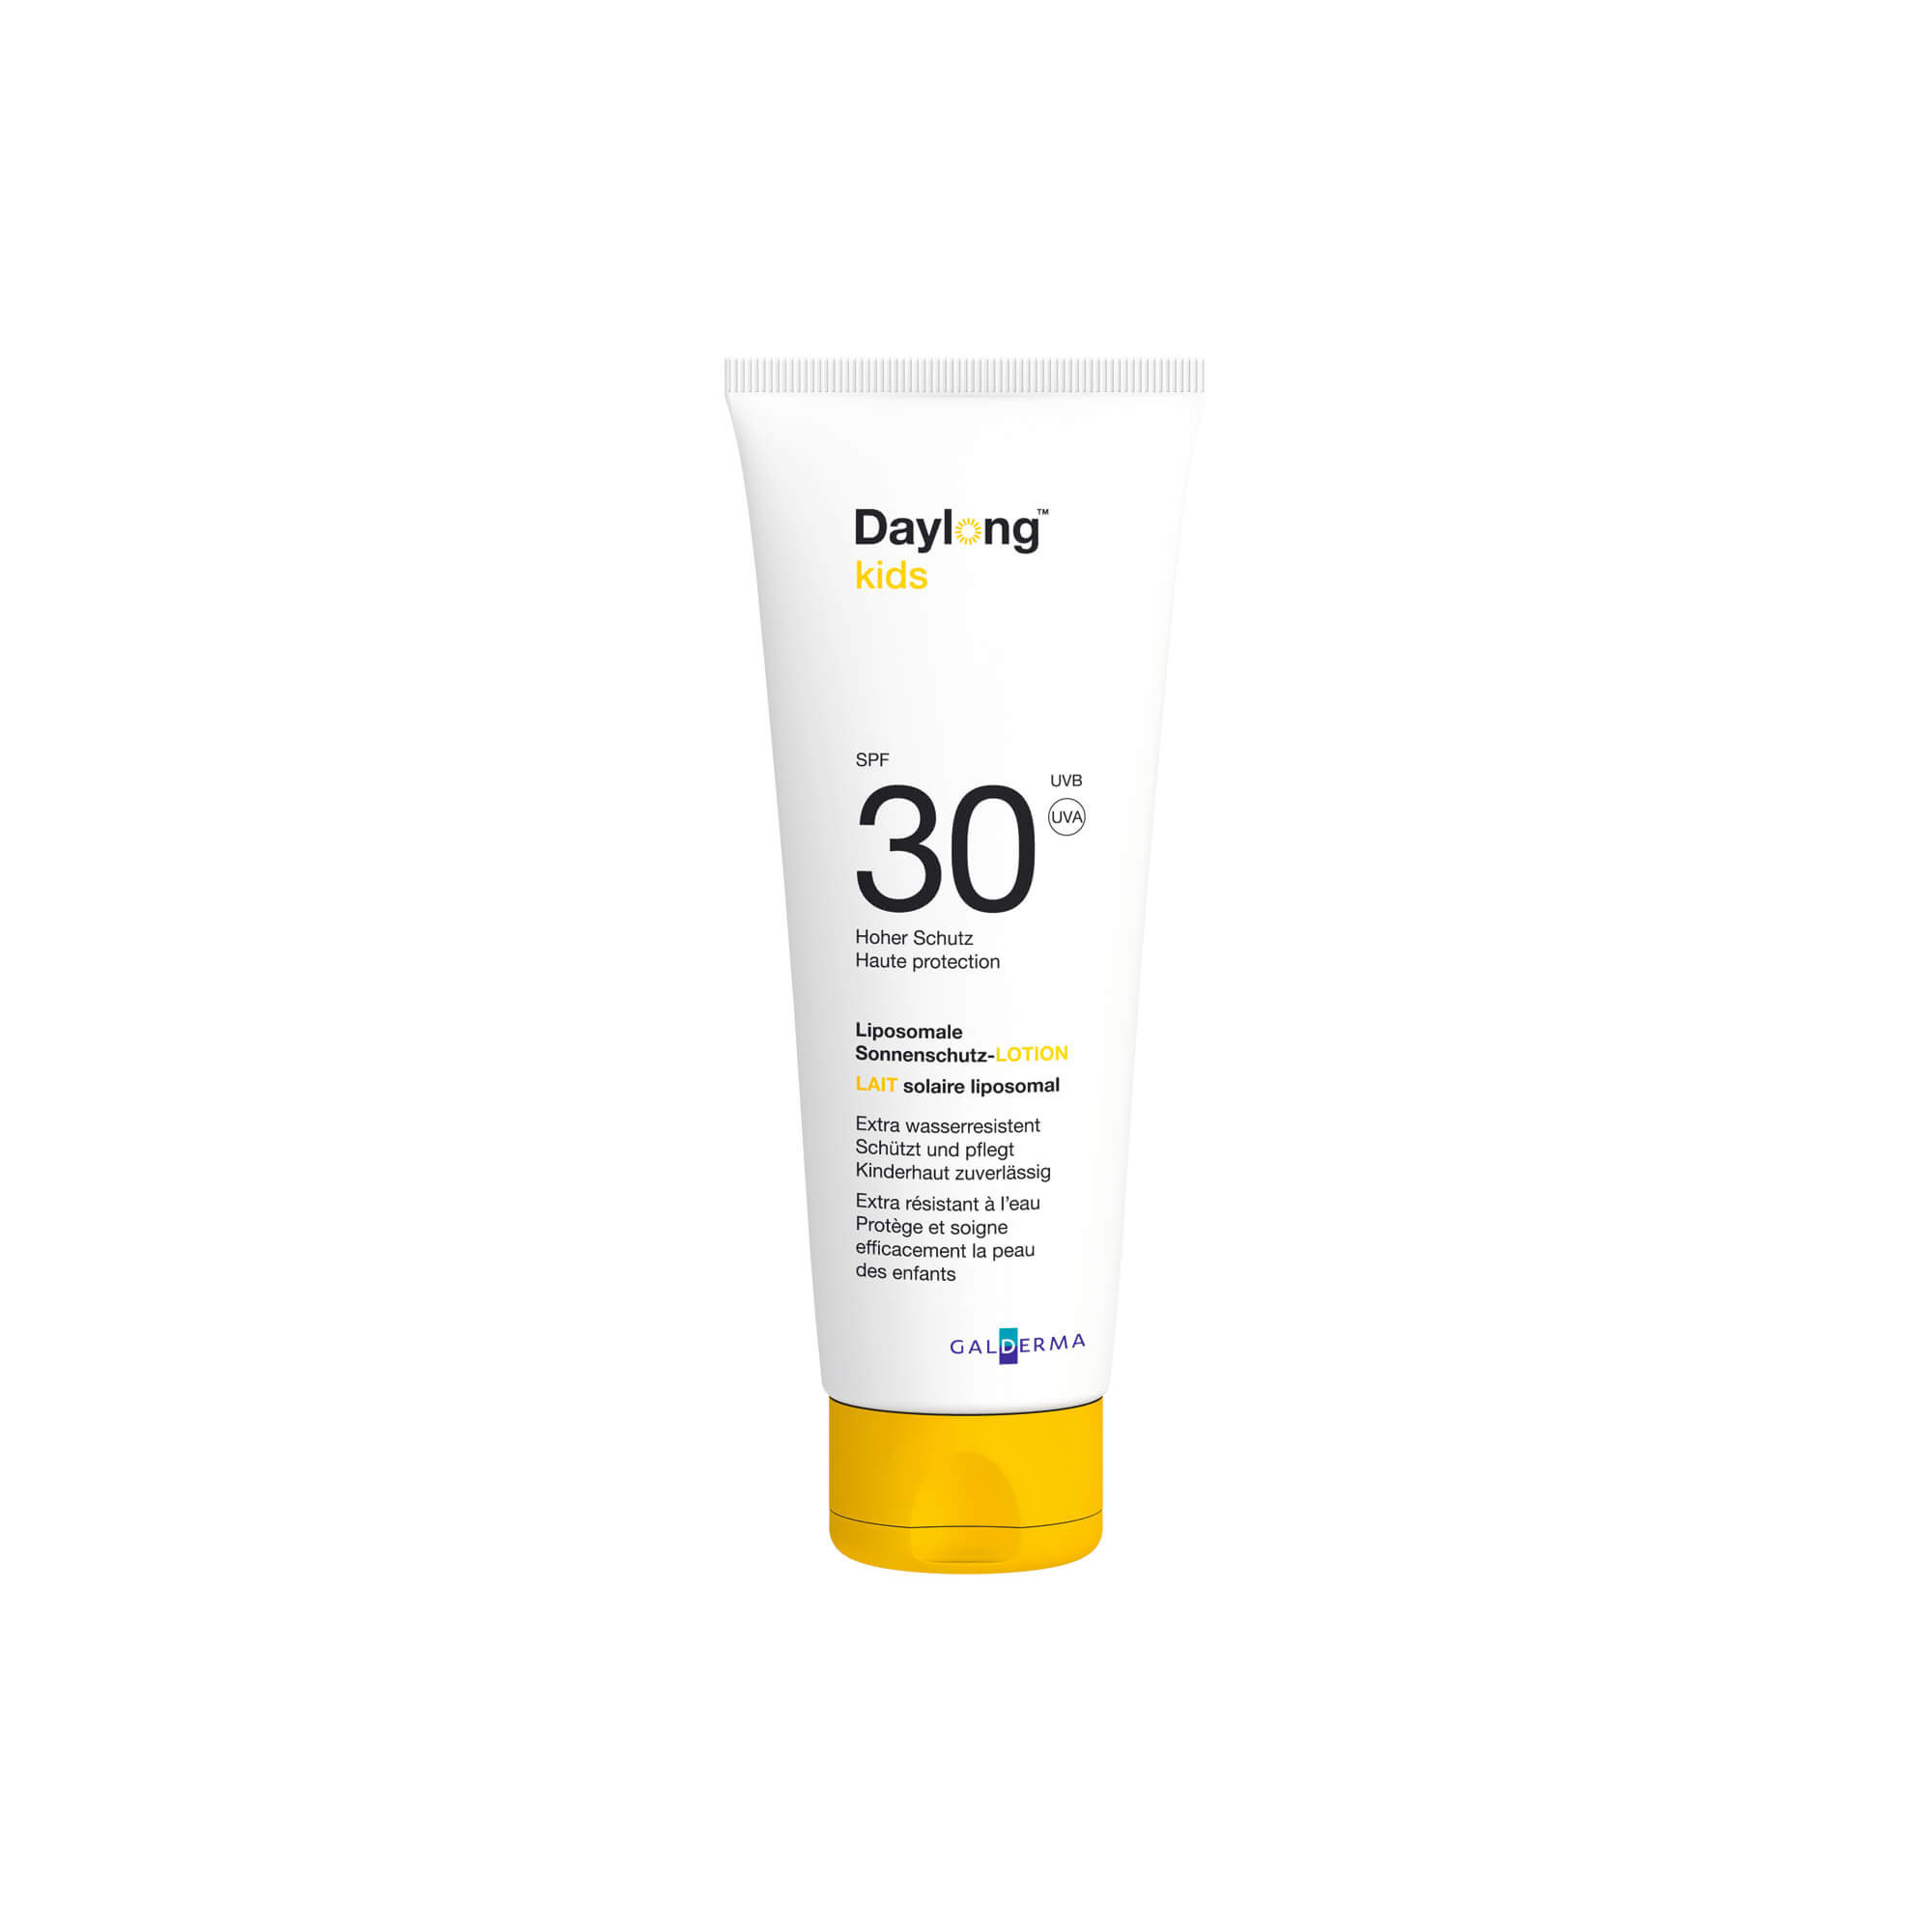 Liposomale Sonnenschutz-Lotion speziell für Kinder mit dem Hauttyp 2-6.